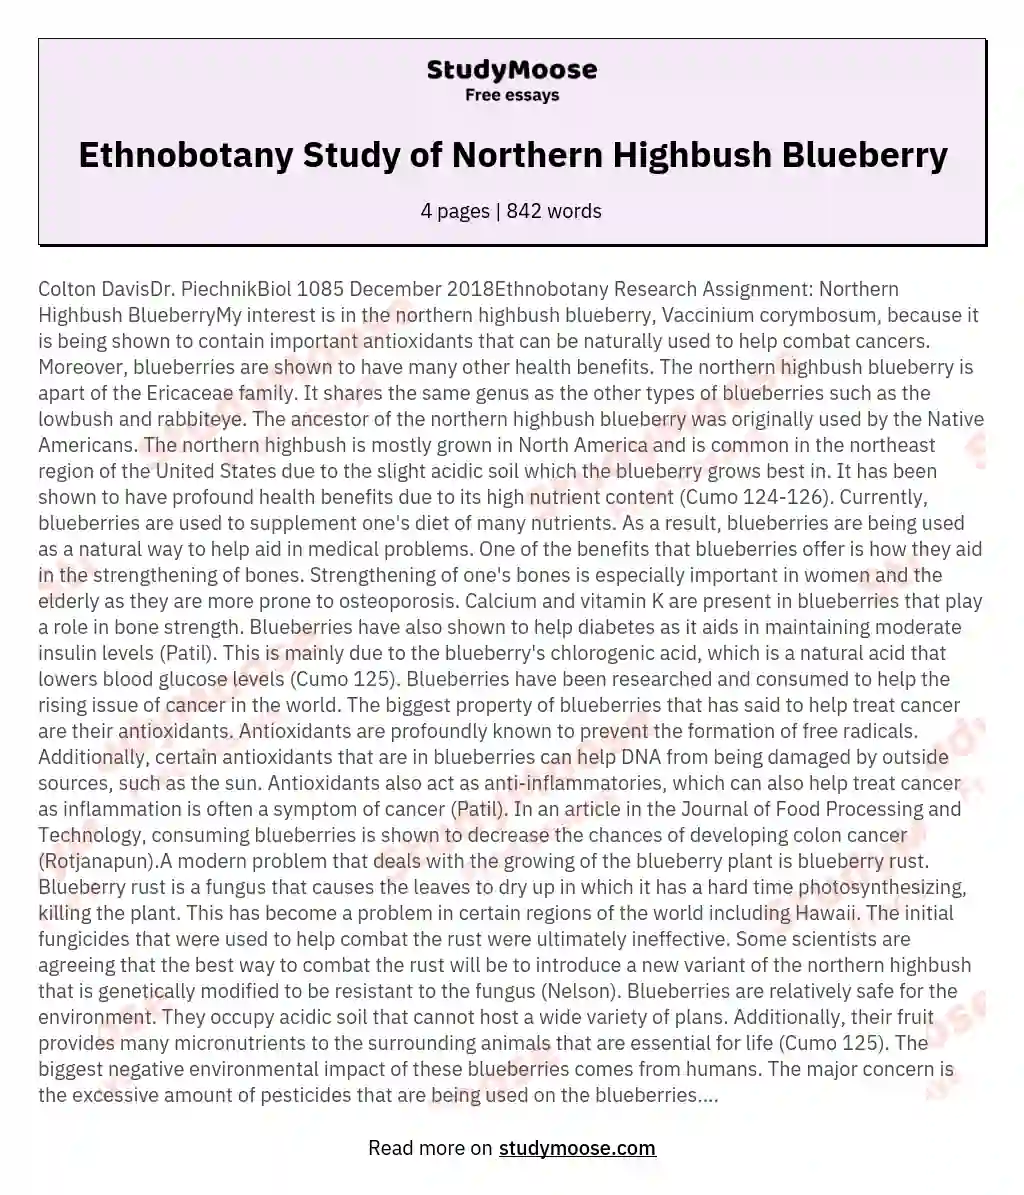 Ethnobotany Study of Northern Highbush Blueberry essay